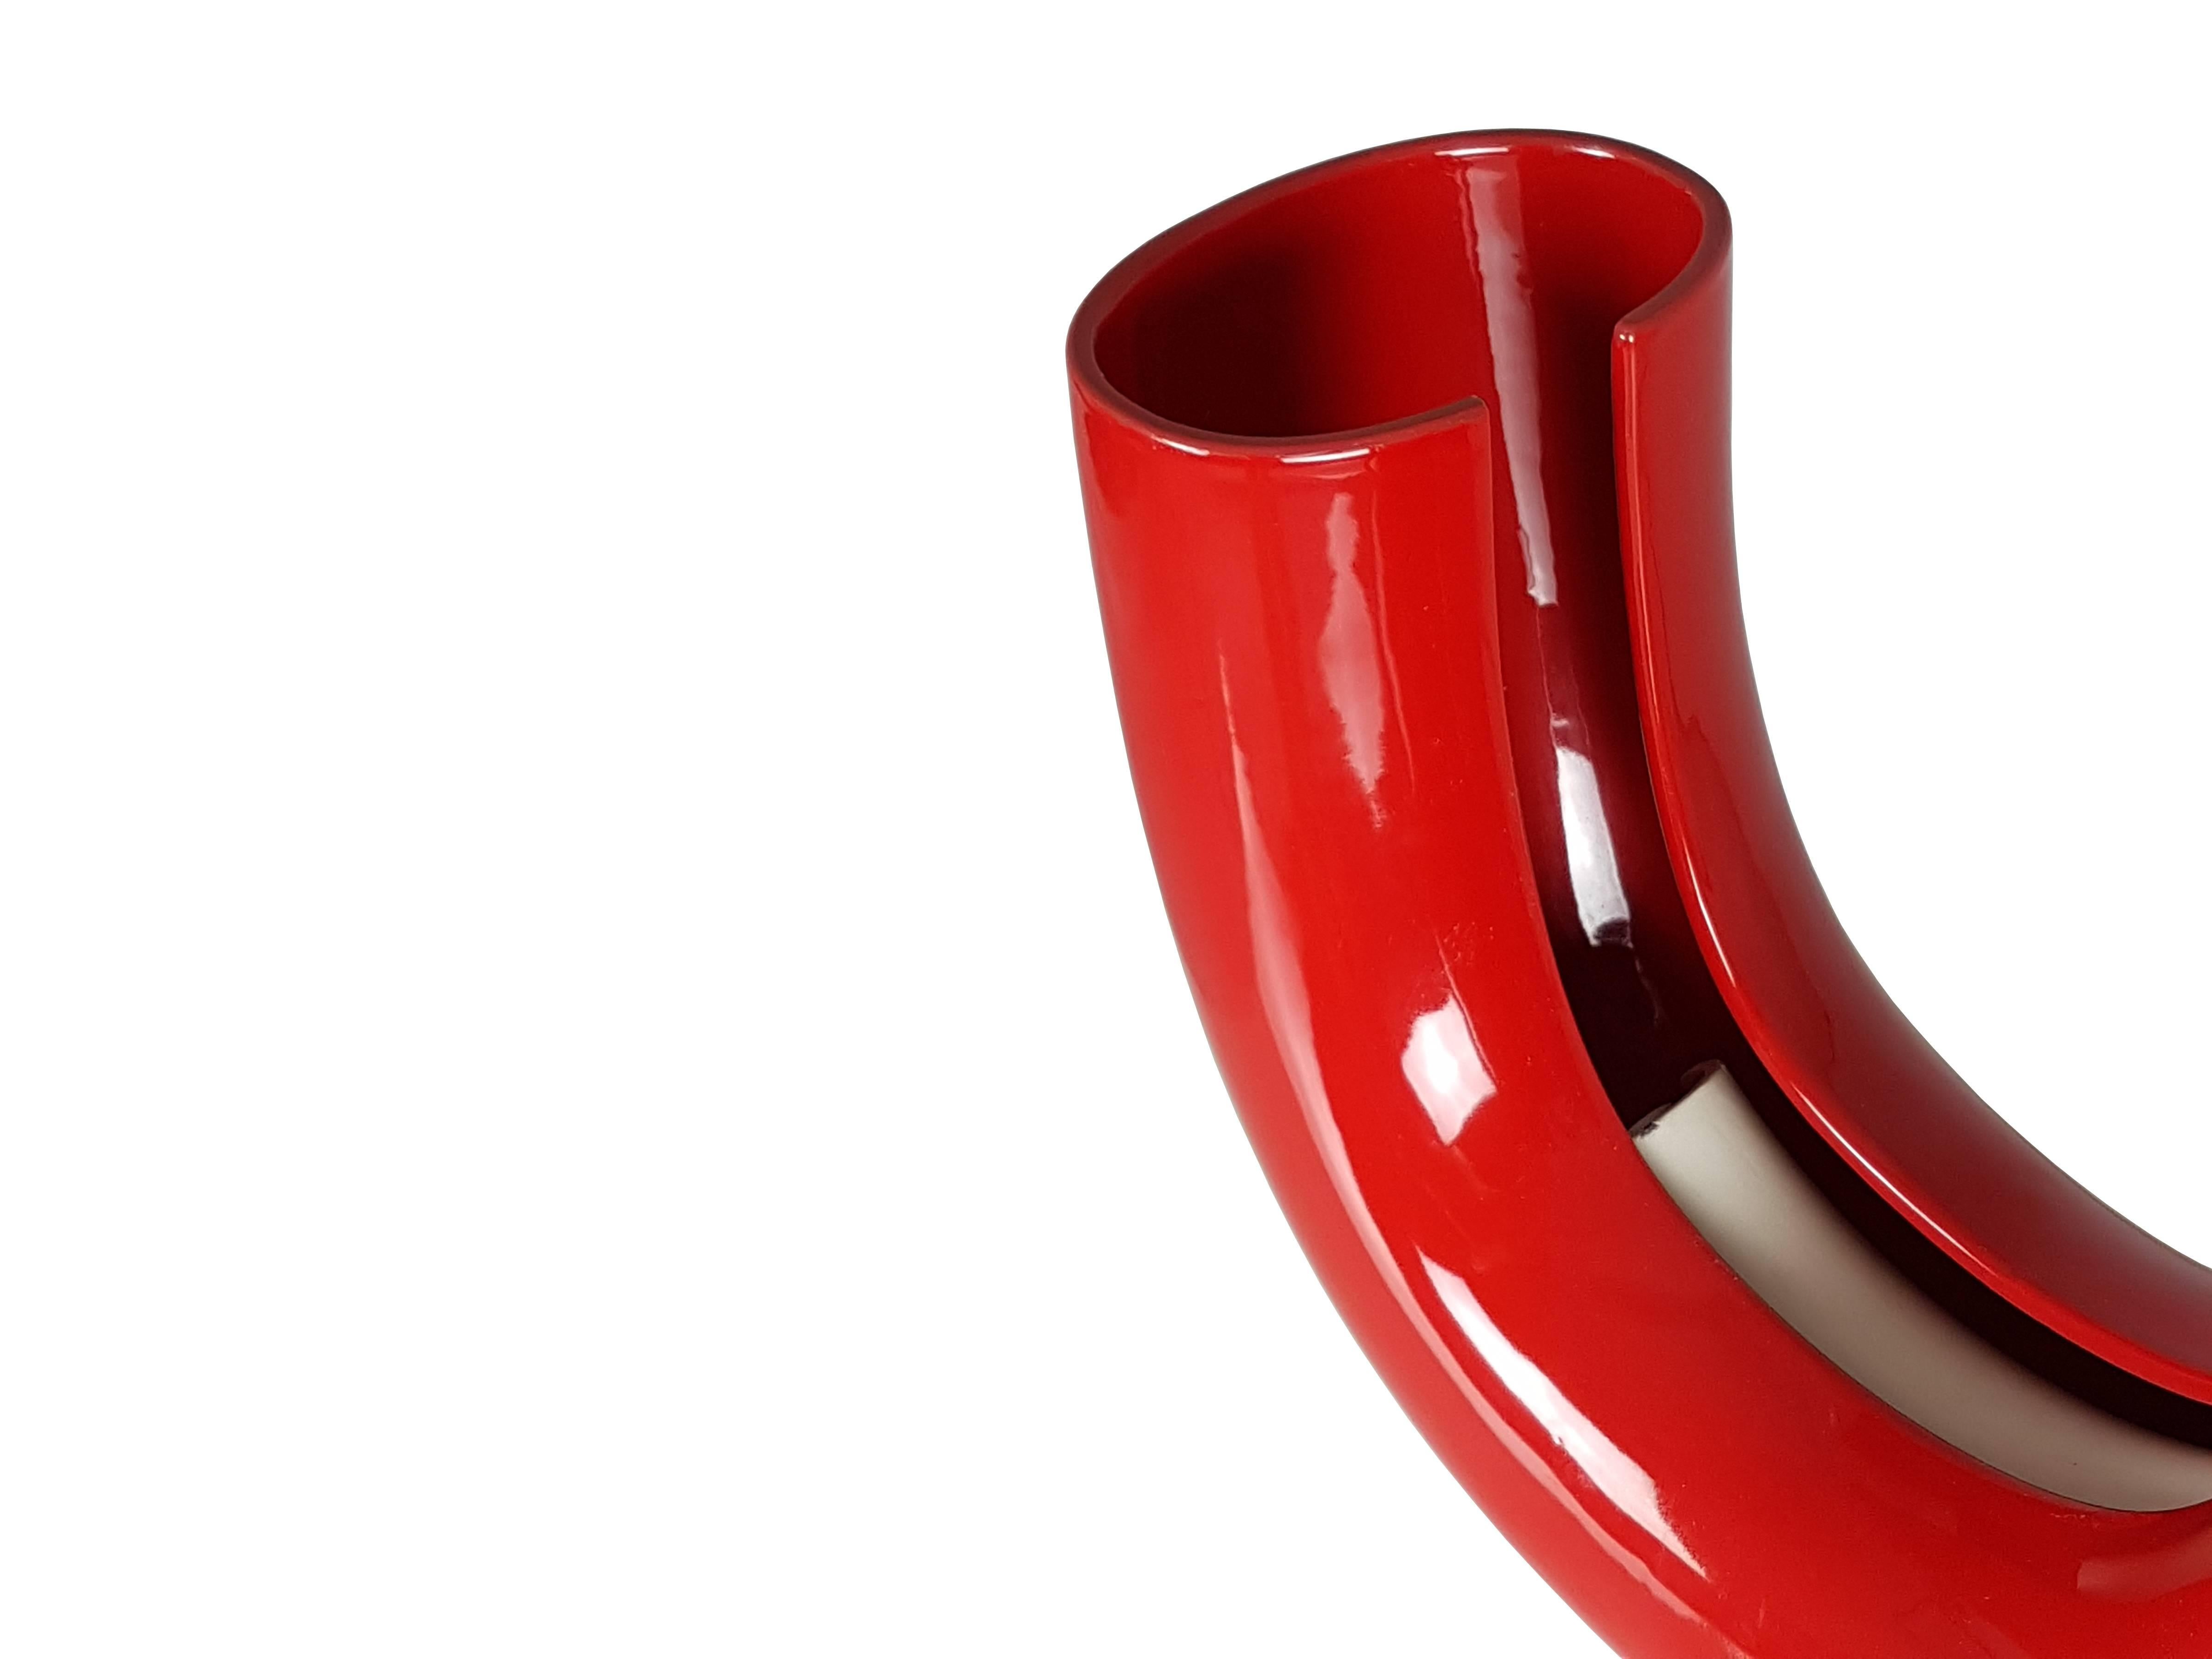 Seltene Tubo-Tischlampe, entworfen von Tomoko Tsuboi Ponzio und hergestellt von Ceramica Franco Pozzi aus Gallarate (Mailand). Rot glasierte Keramik mit zwei inneren Lampenfassungen.